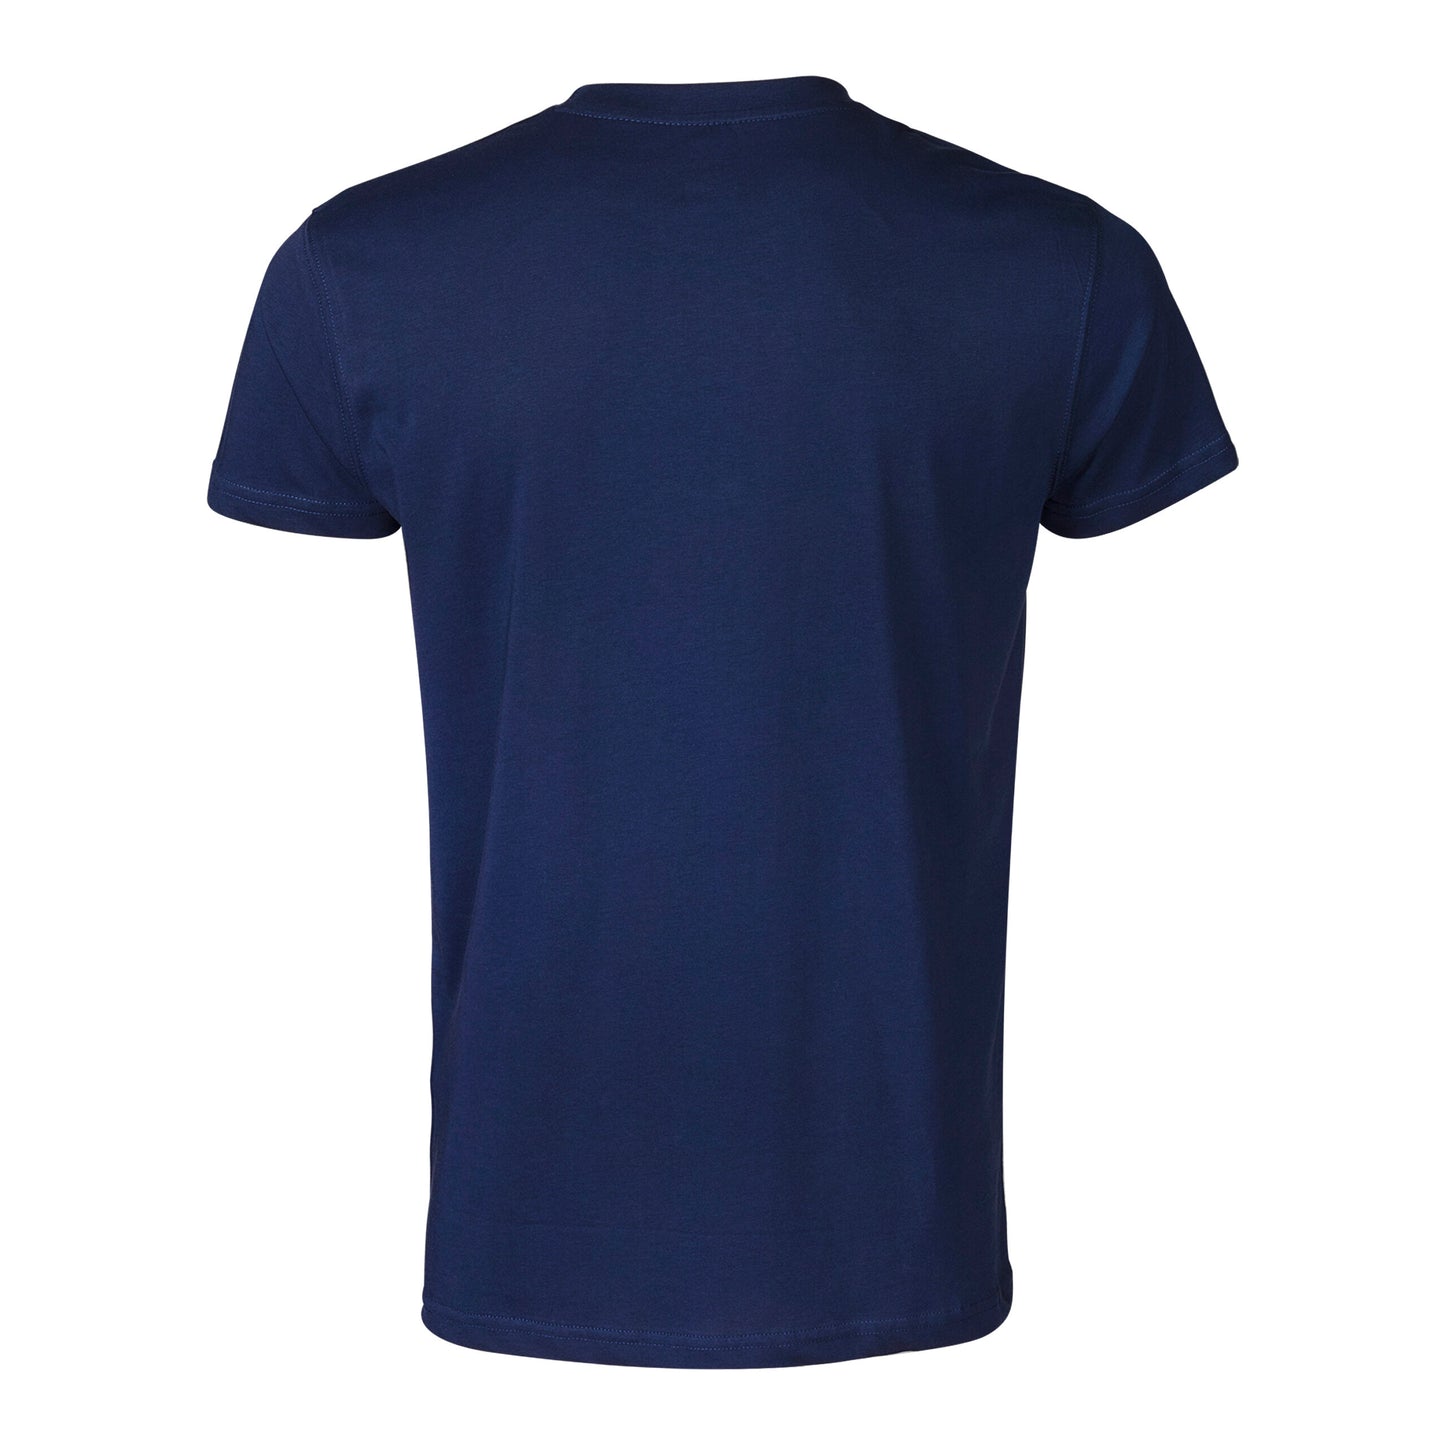 Clts21v B Adidas Vertical Boxing T Shirt Blue 03